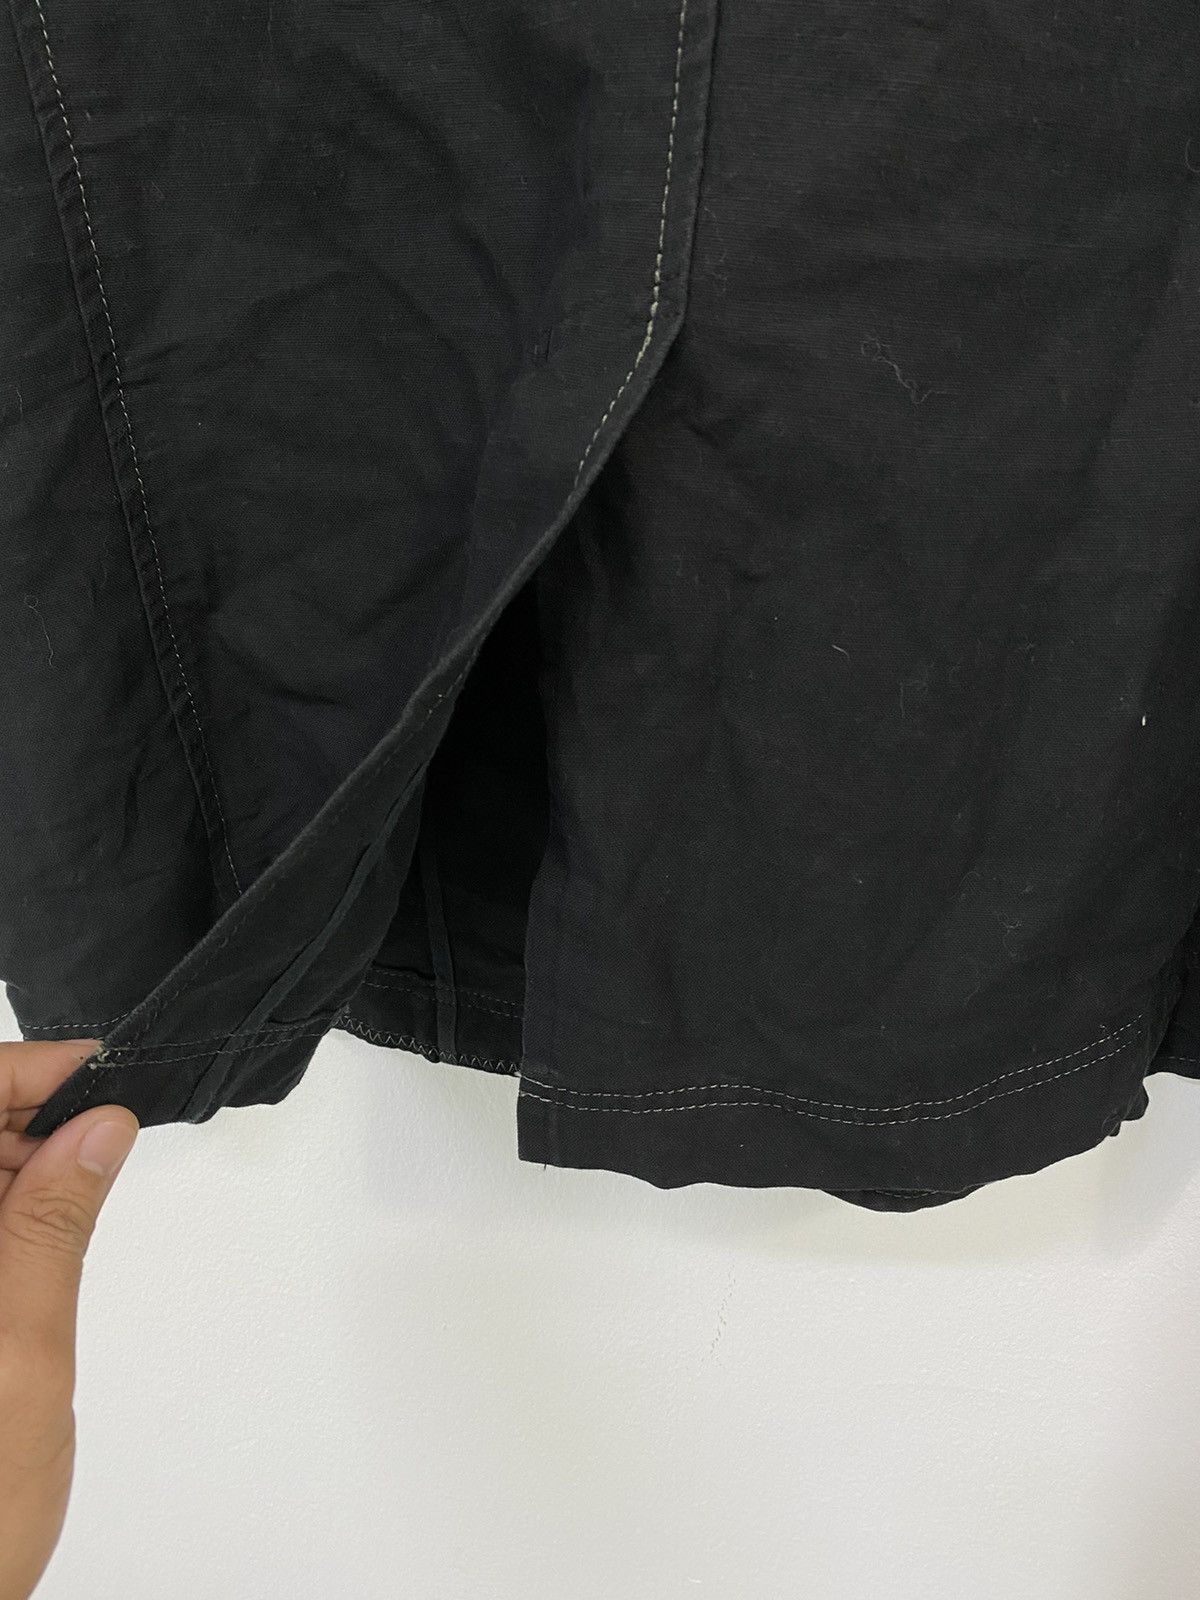 Lanvin Linen Jacket 4 Pocket Design Made in Japan - 8